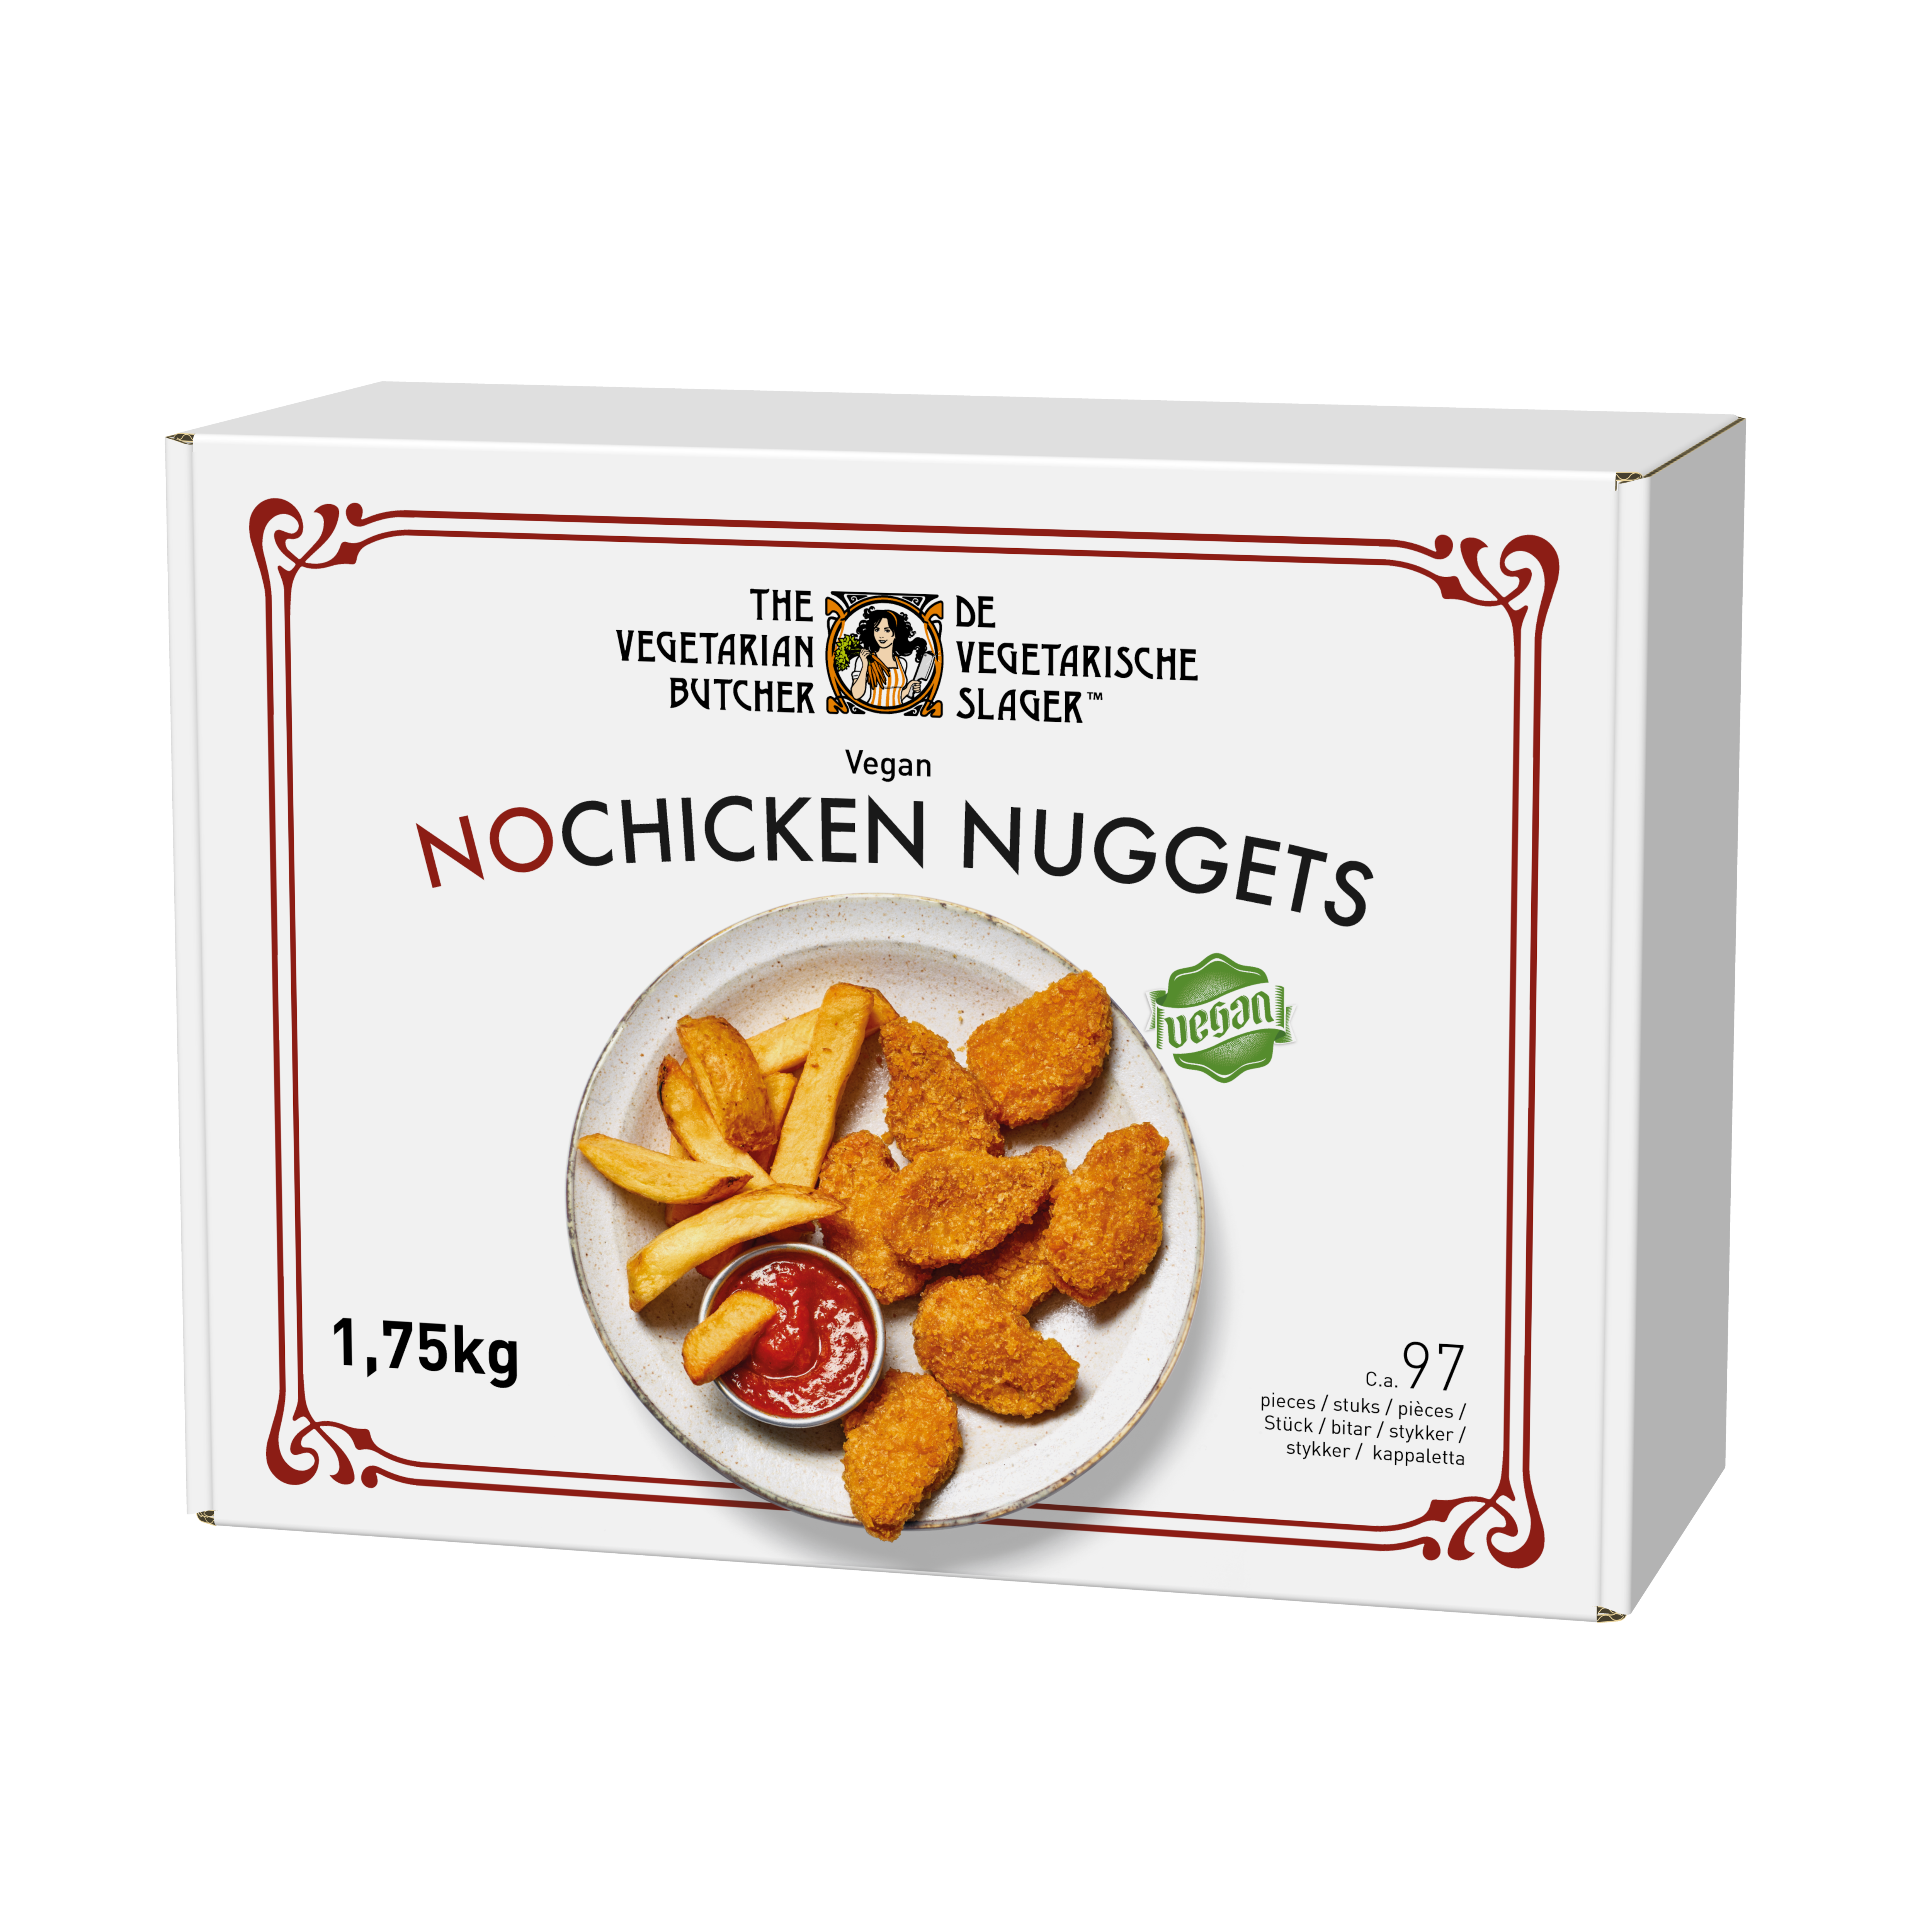 The Vegetarian Butcher NoChicken Nuggets - Rastlinski medaljoni 1,75 kg - Izdelki na osnovi rastlinskih beljakovin, okus in tekstura mesa